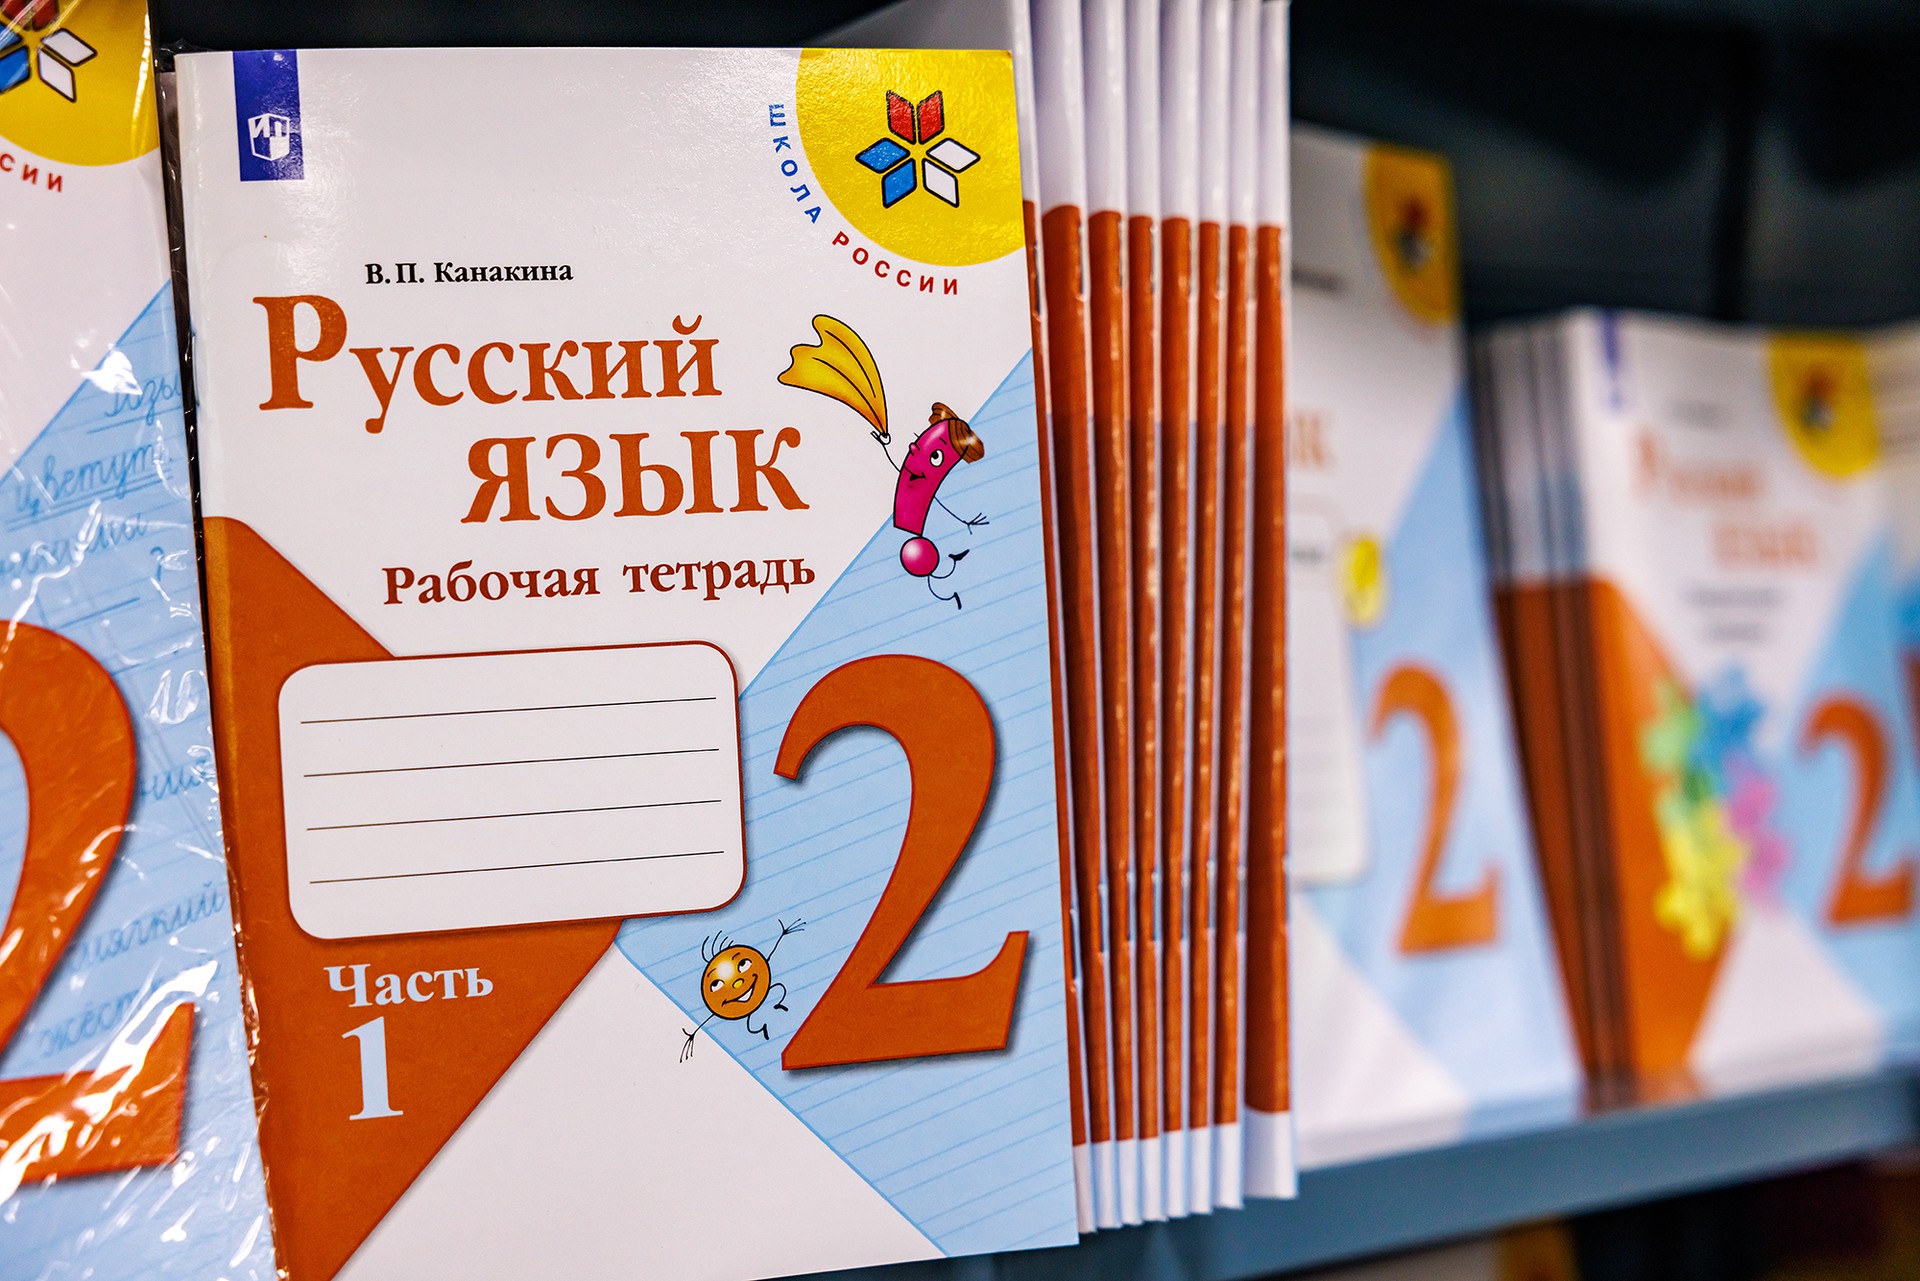 Филолог рассказал, в каких странах считается престижным изучение русского языка